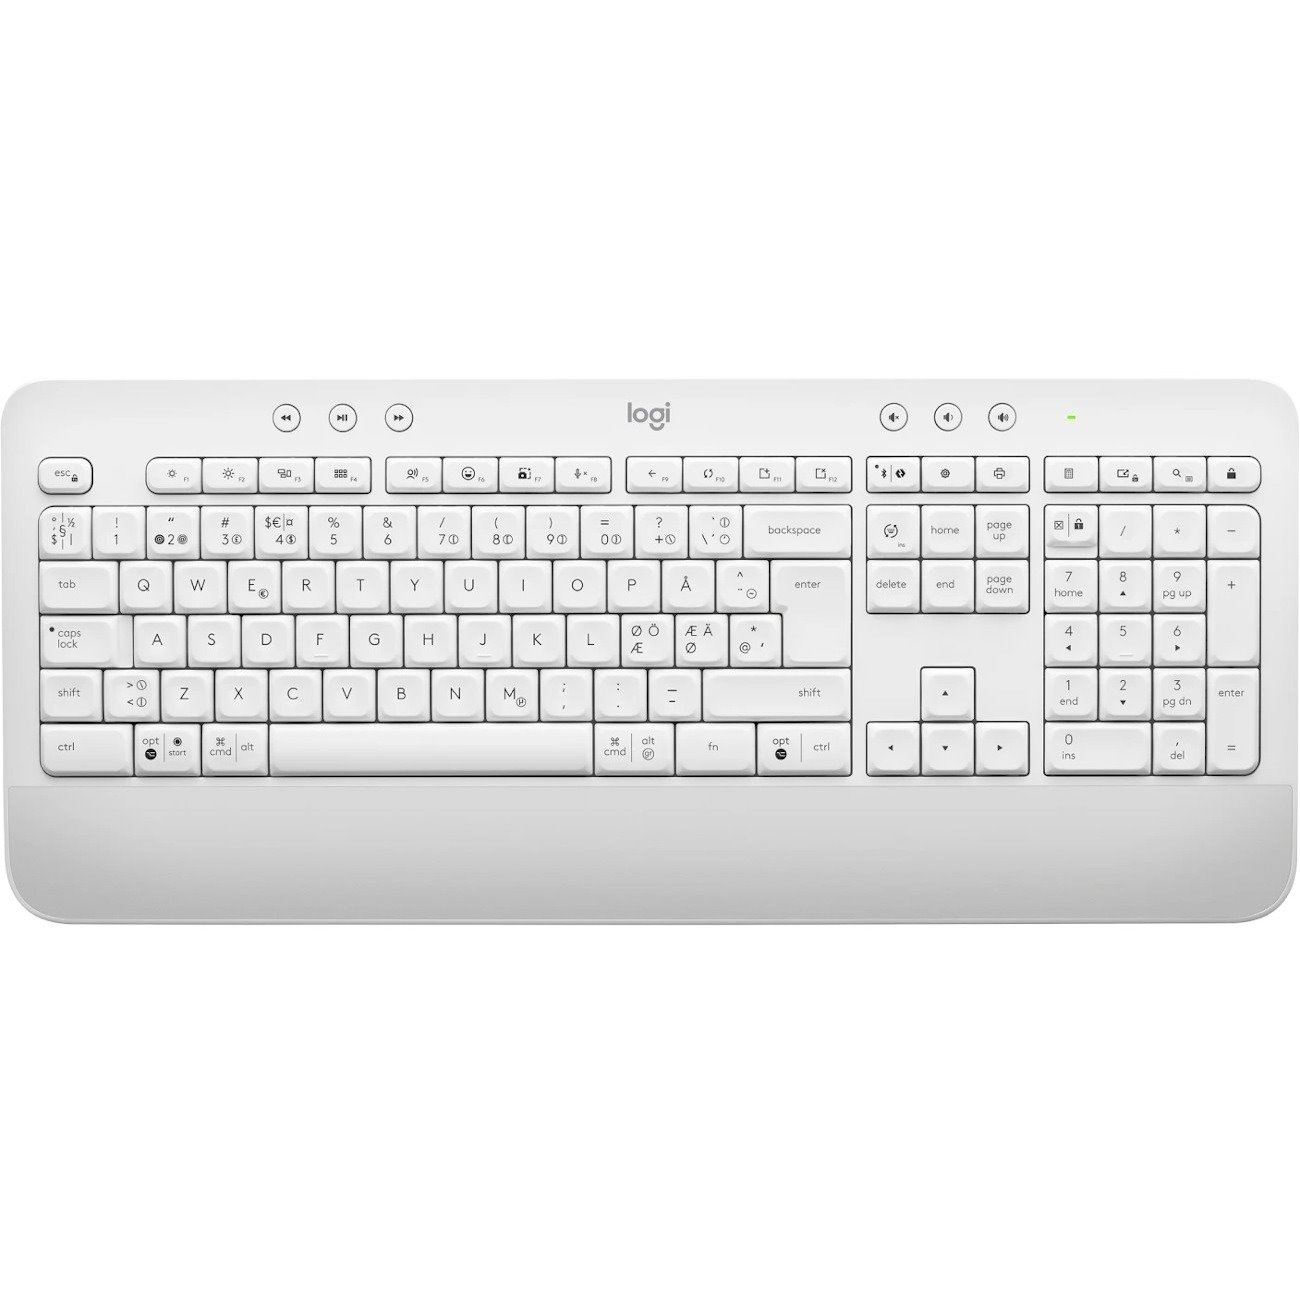 Logitech Signature K650 Keyboard - Wireless Connectivity - USB Interface - English - Off White, White